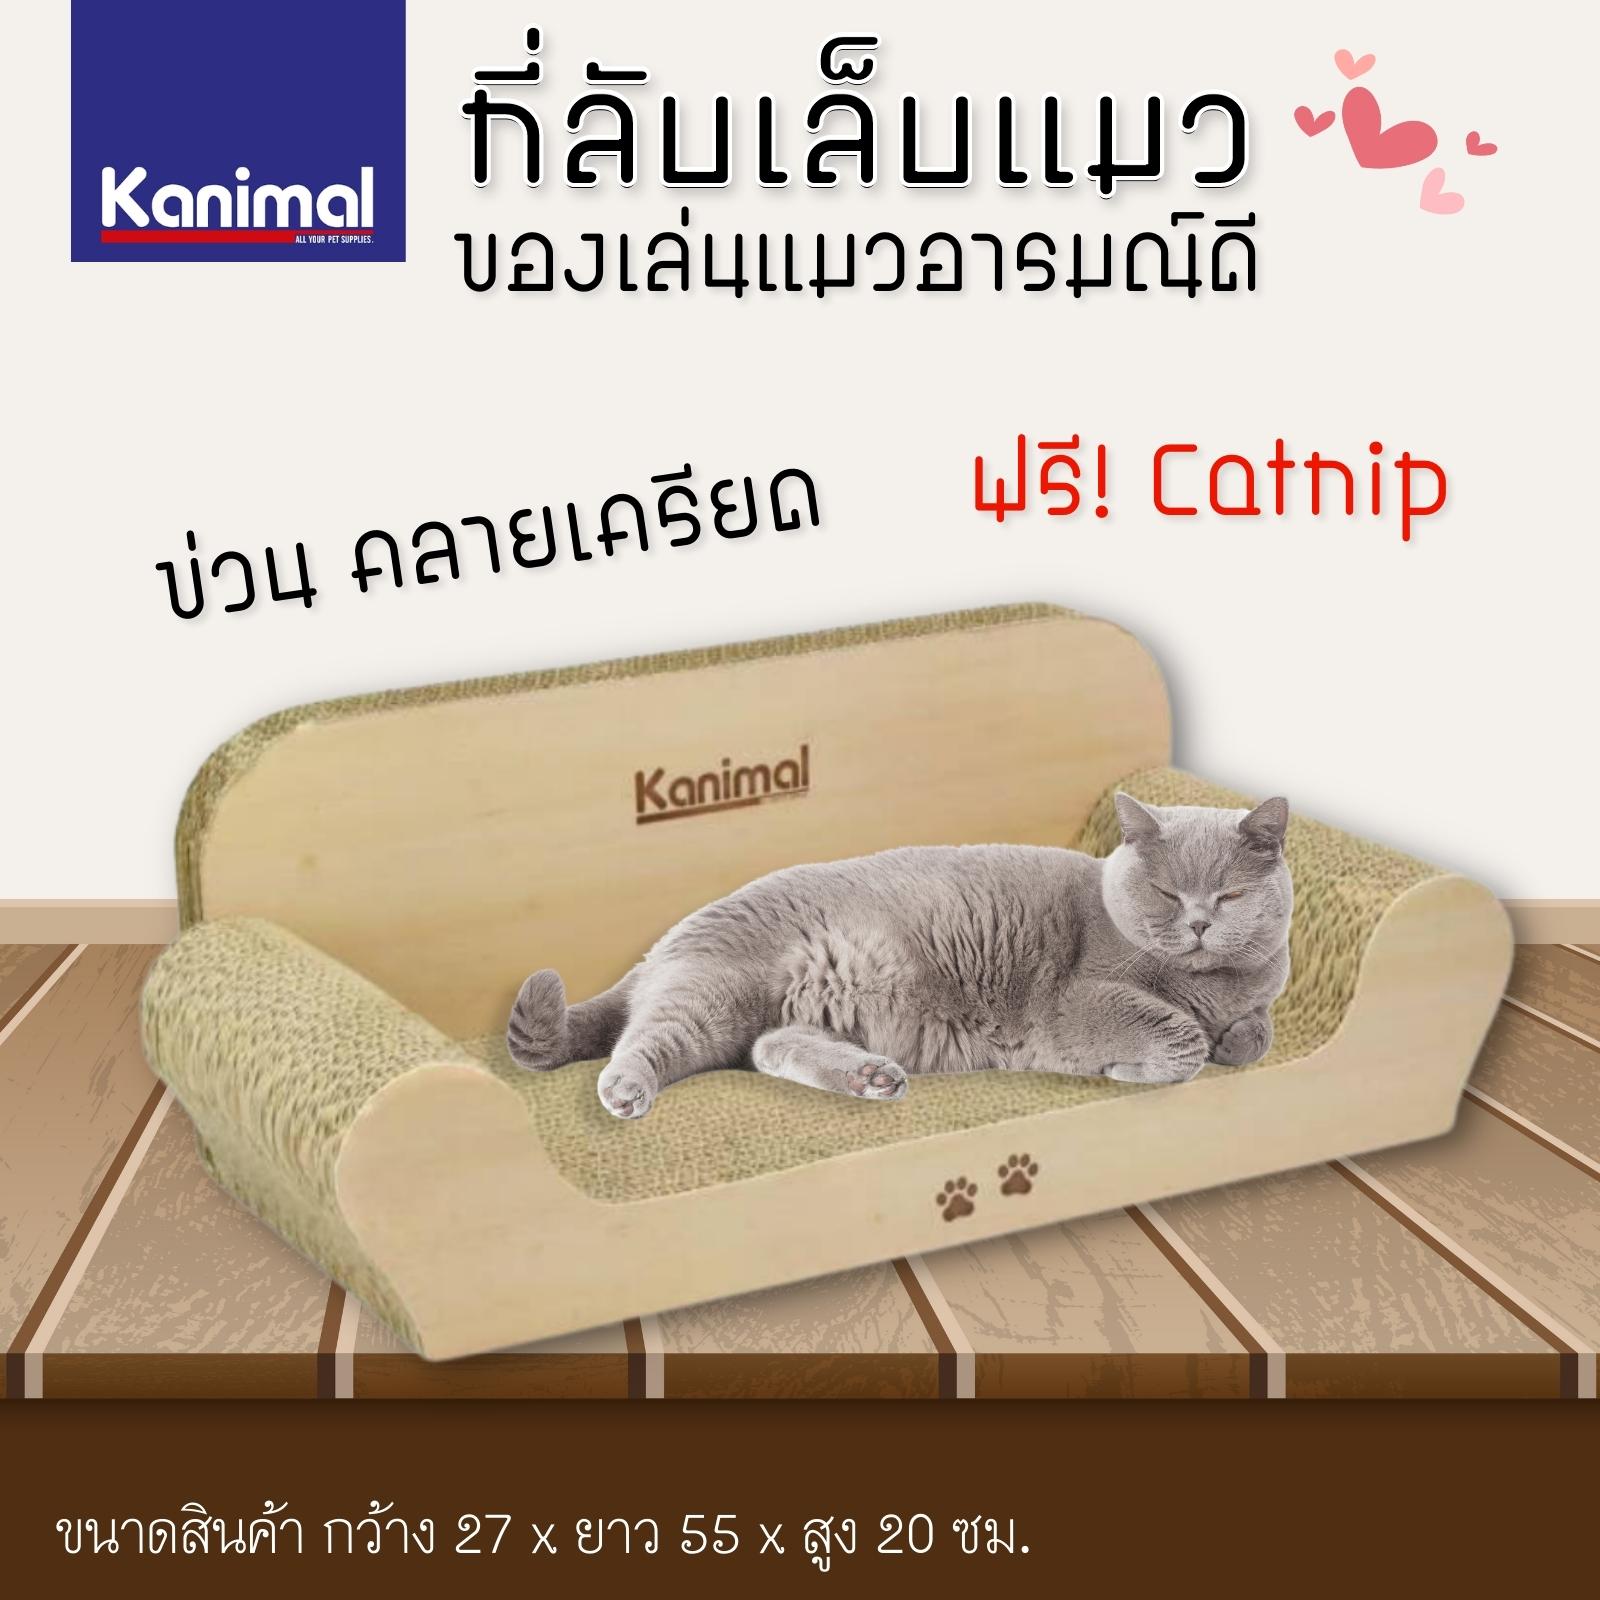 Kanimal Cat Toy ของเล่นแมว ที่ลับเล็บแมว รุ่นโซฟาจัมโบ้ ข่วนมัน นอนสบาย ลูกฟูกหนา ลับเล็บได้นาน ฟรี ! ผงแคทนิป